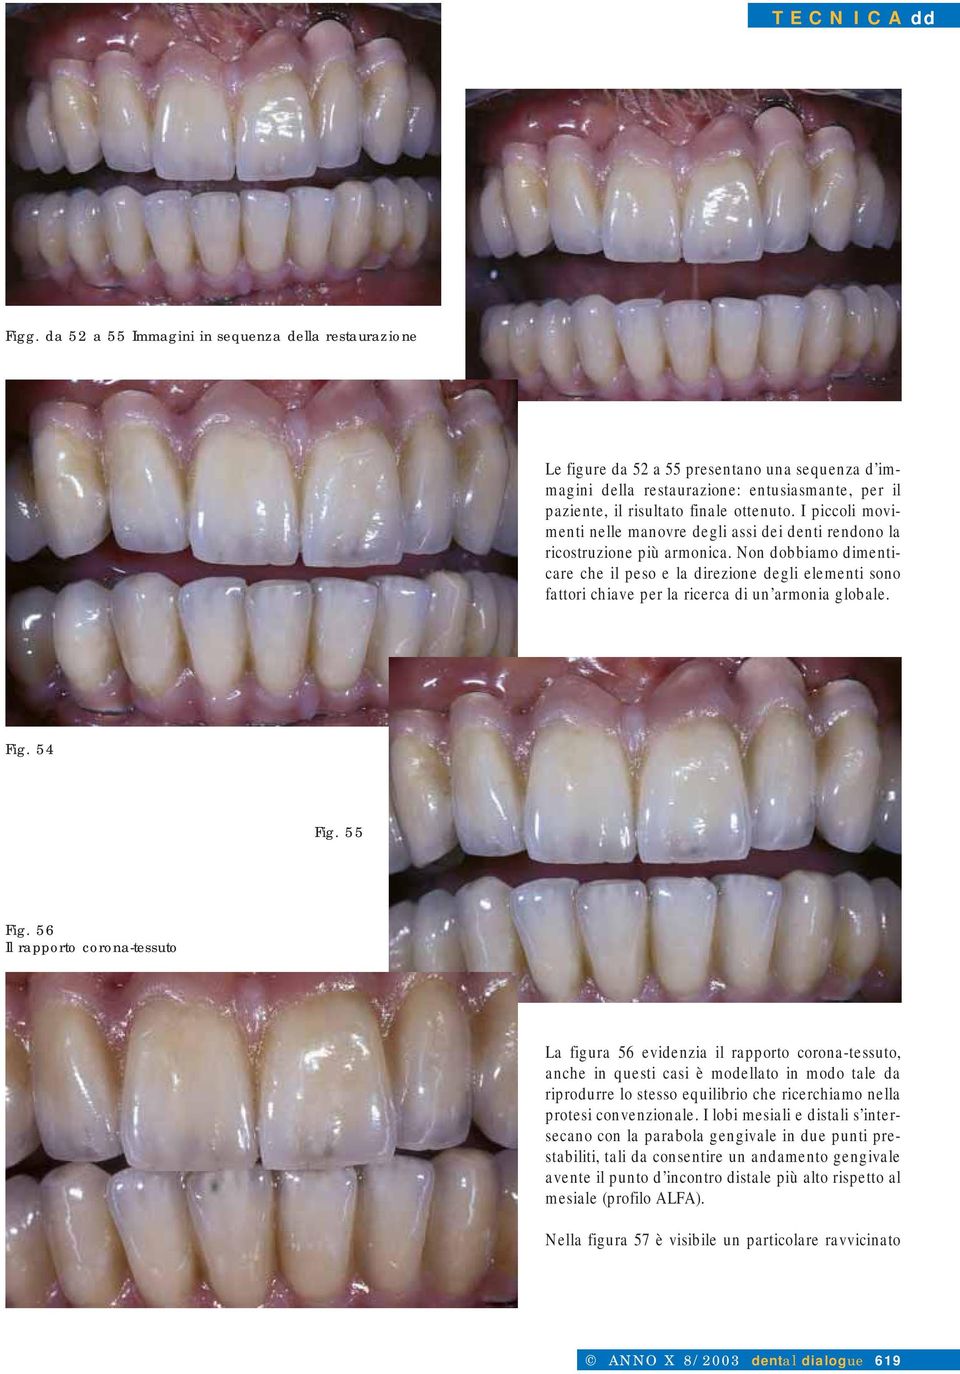 I piccoli movimenti nelle manovre degli assi dei denti rendono la ricostruzione più armonica.